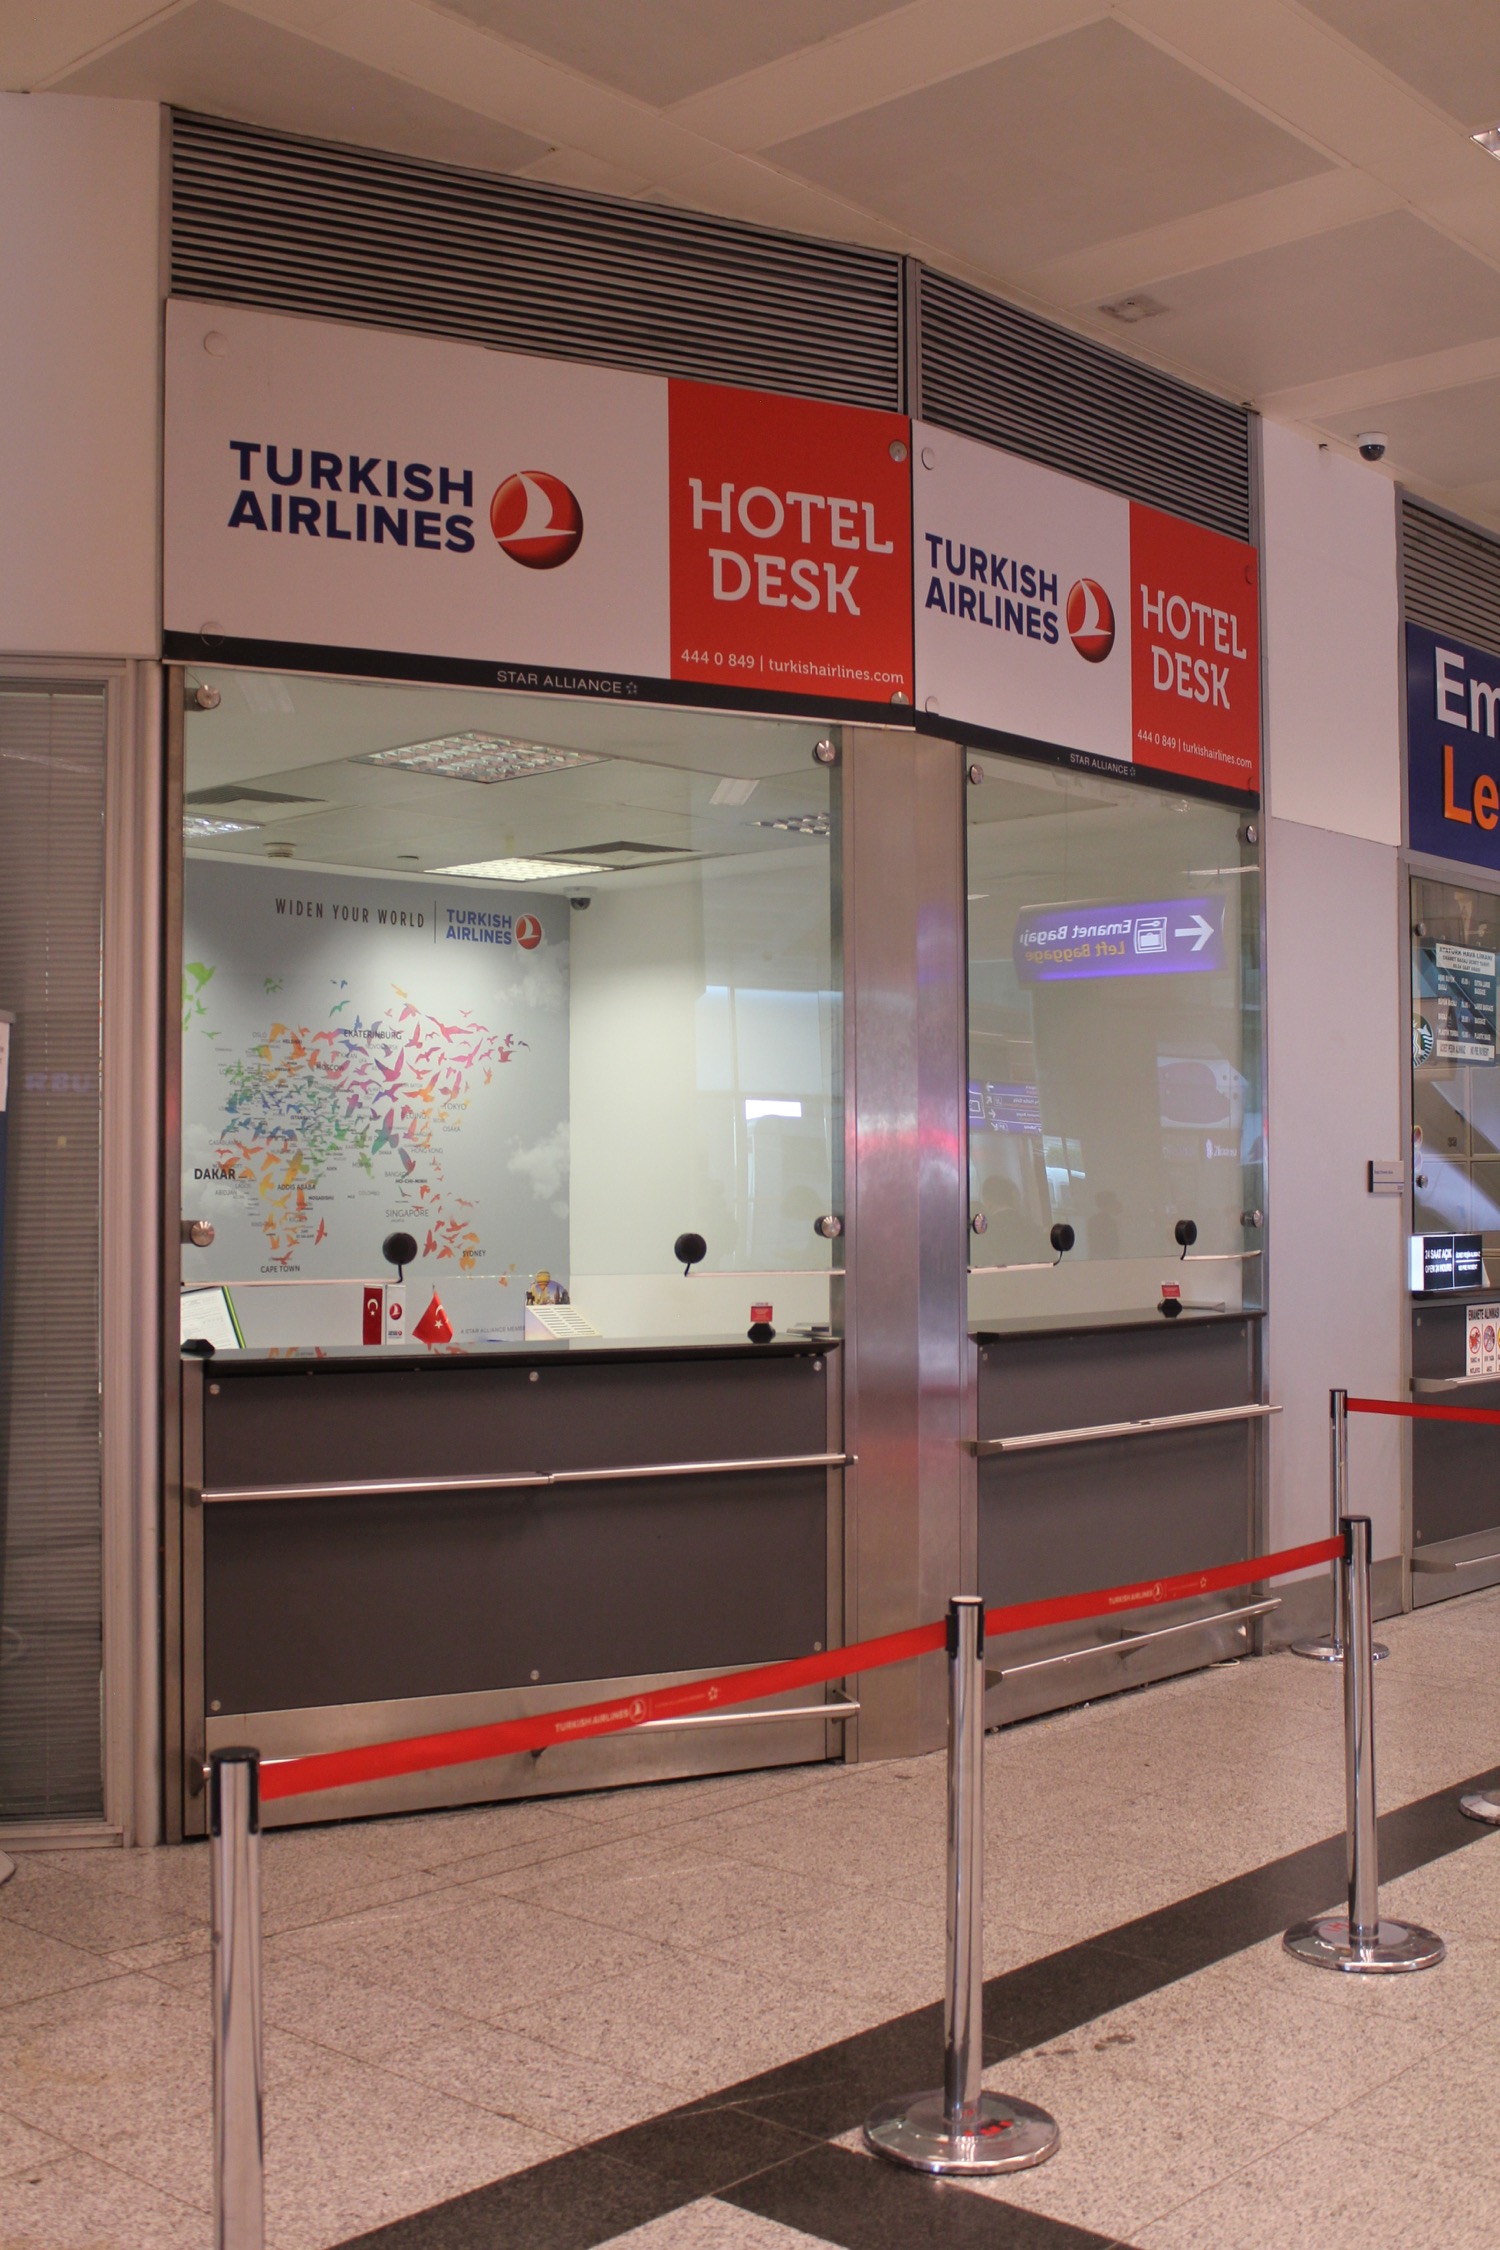 Turkish Airlines Hotel Desk - 1